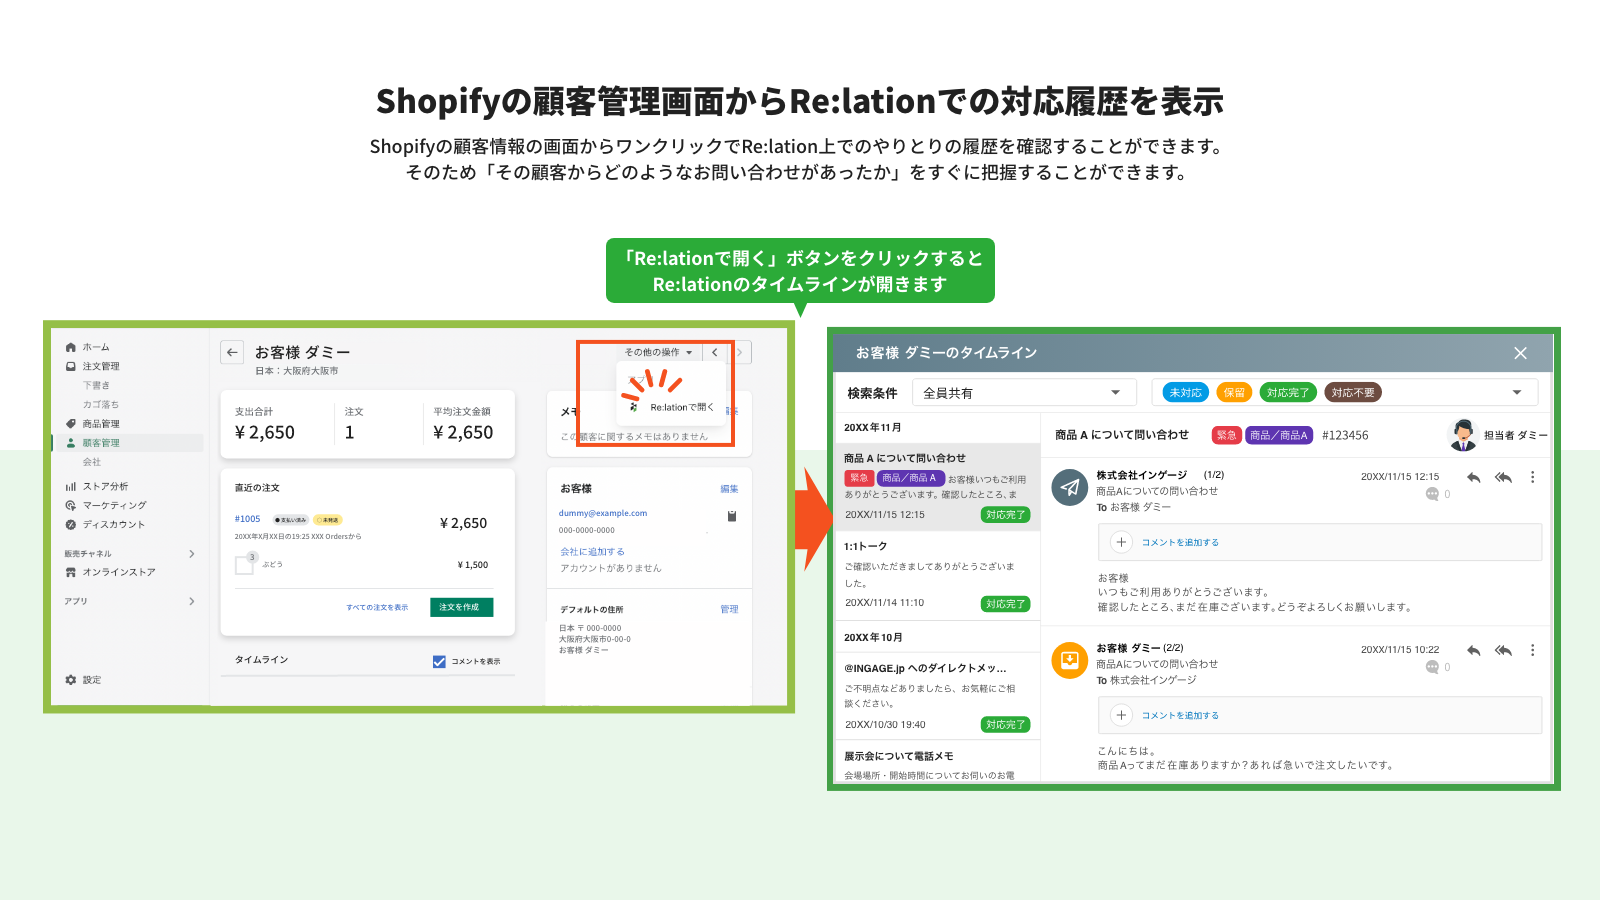 Shopifyの顧客管理画面からRe:lationでの対応履歴を表示